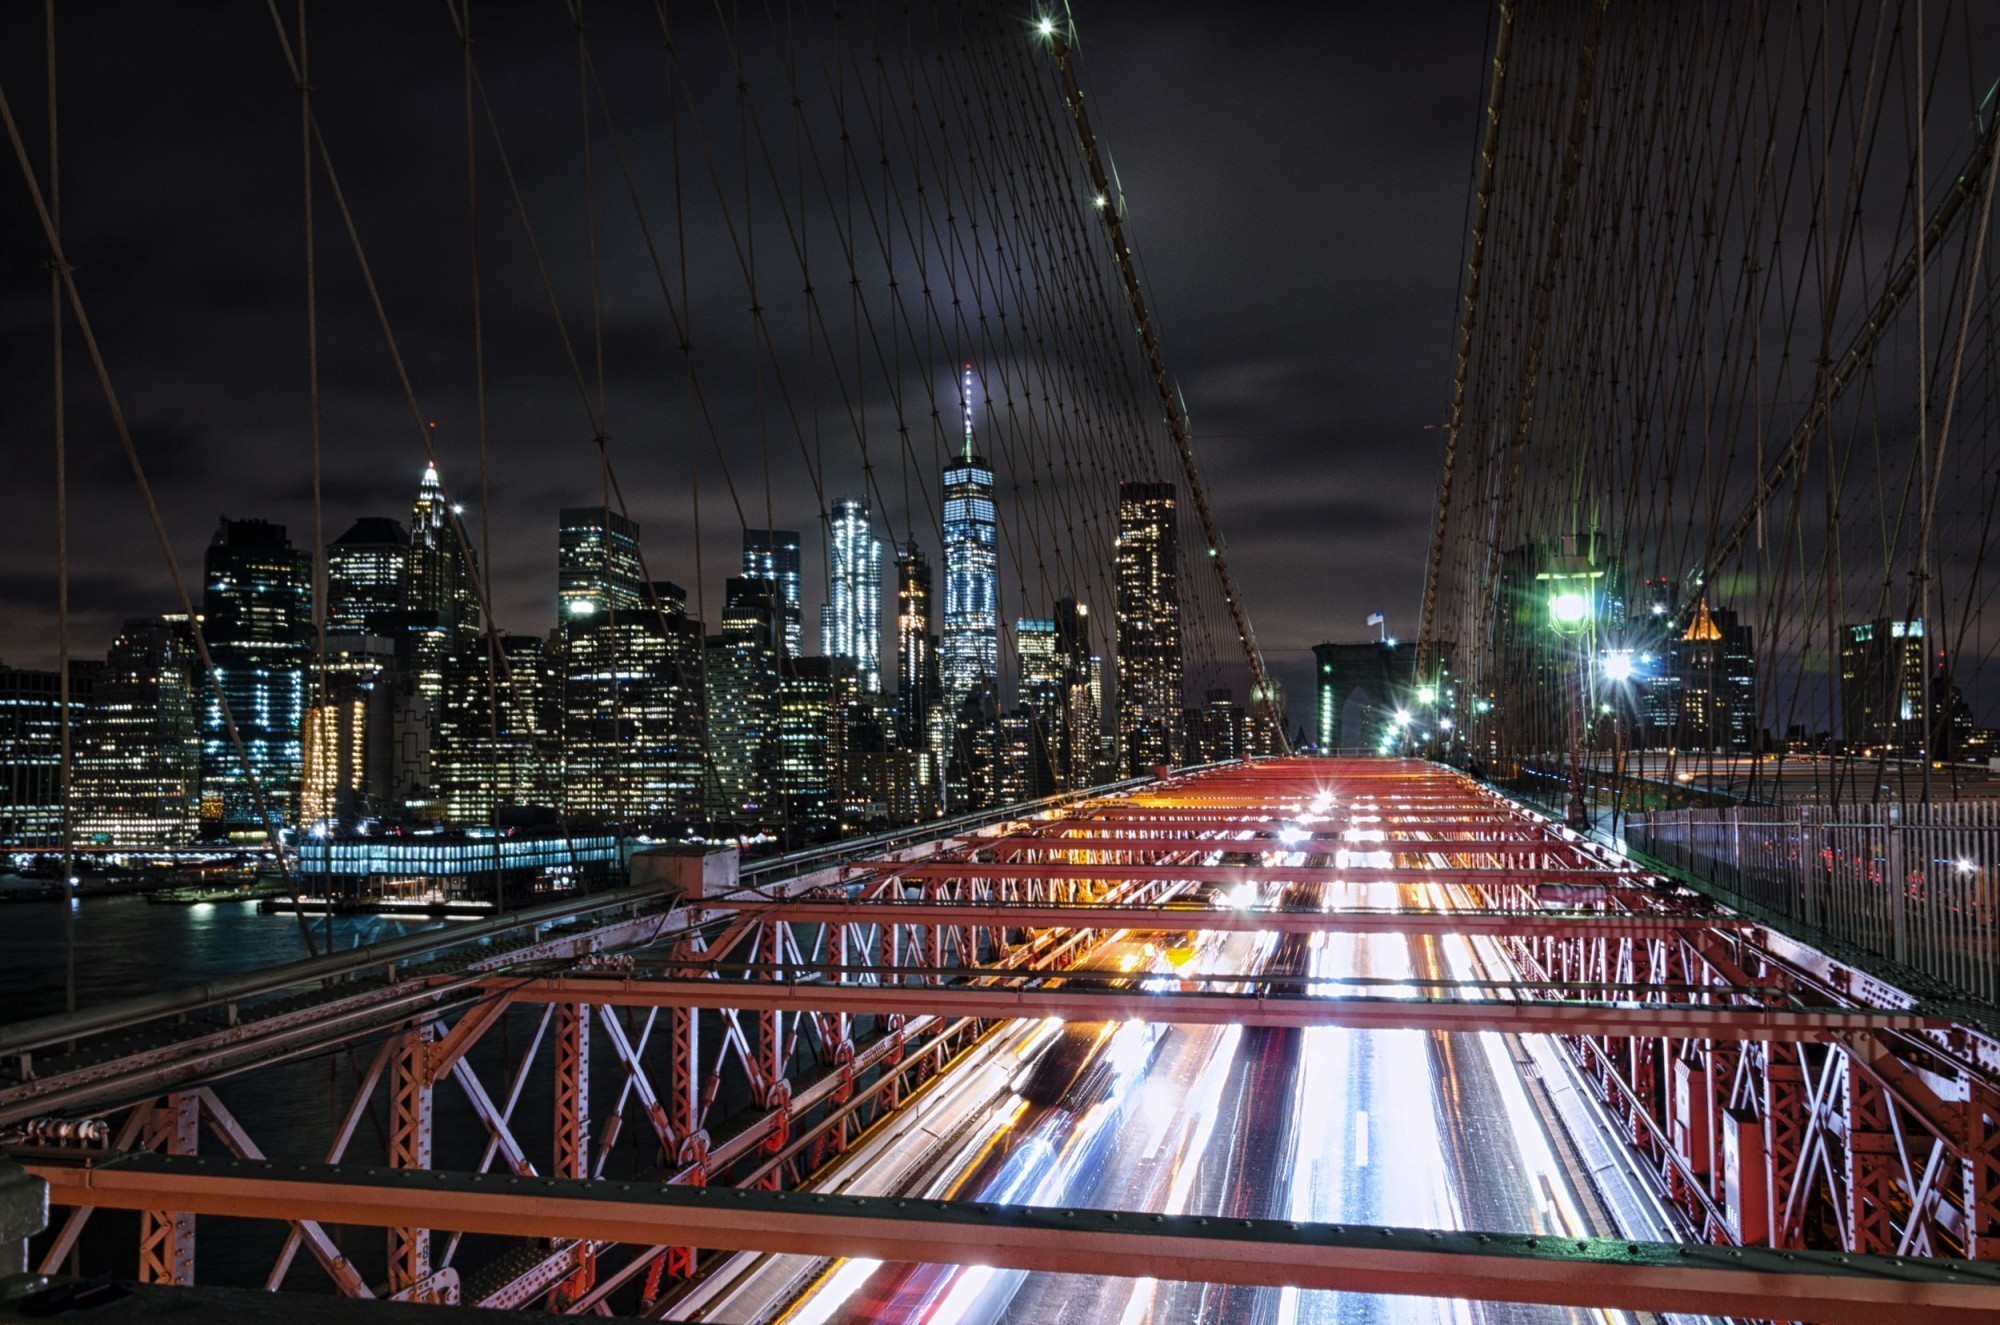 Trafic sur le pont de Brooklyn la nuit. Le champ magnétique de Brooklyn démontre que, contrairement à Berkley, New York ne dort pas la nuit.